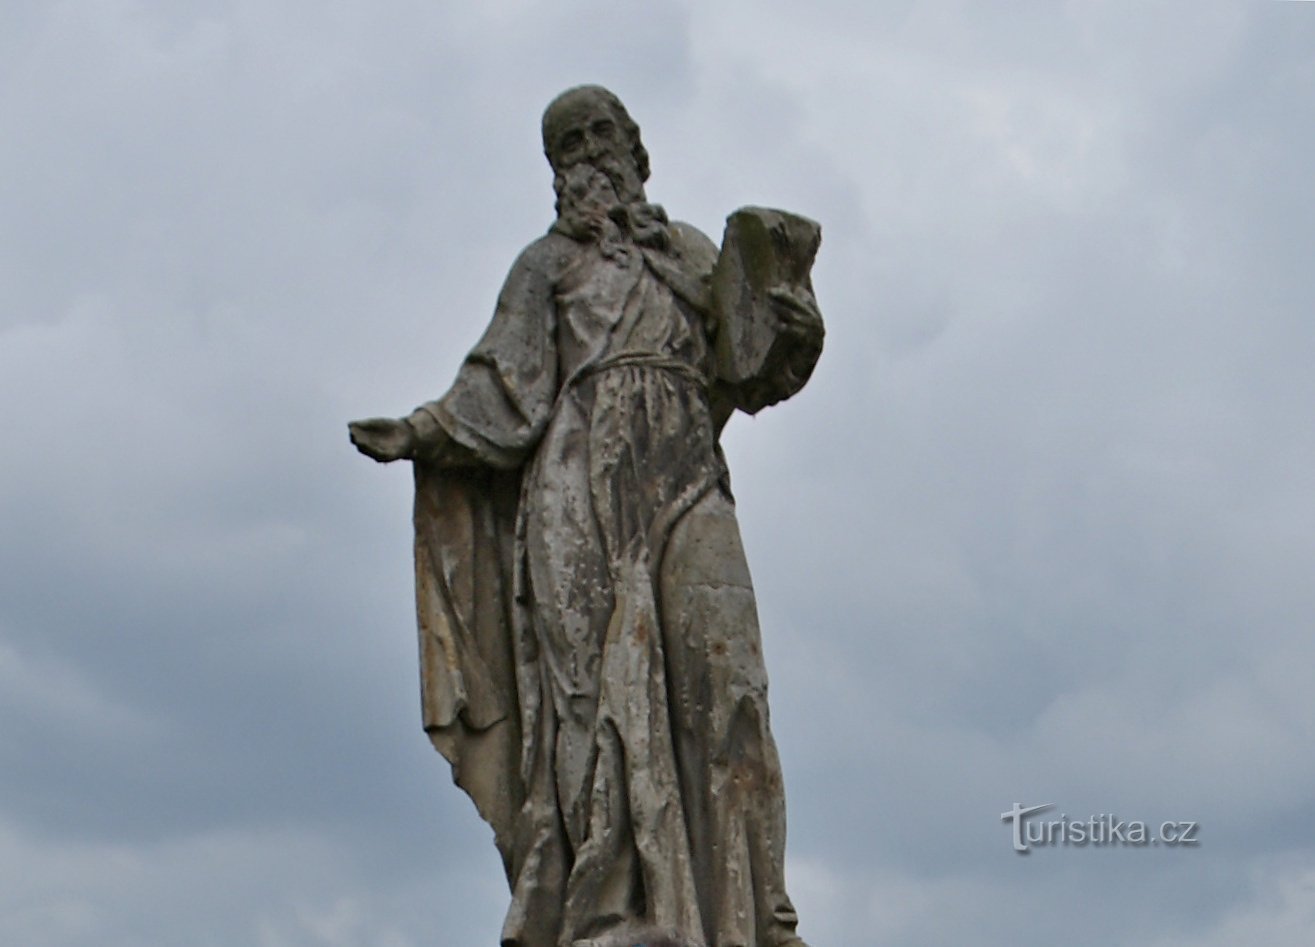 Блатец (біля Оломоуца) – статуя св. Лінхарт